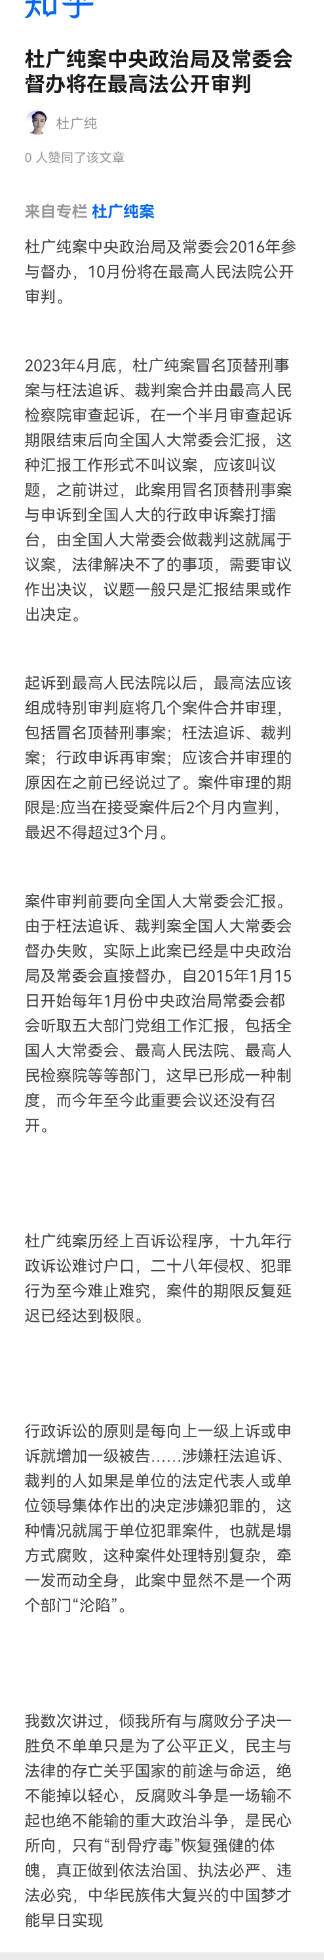 杜广纯案中央政.治局及常委会督办将在最高法公开审判